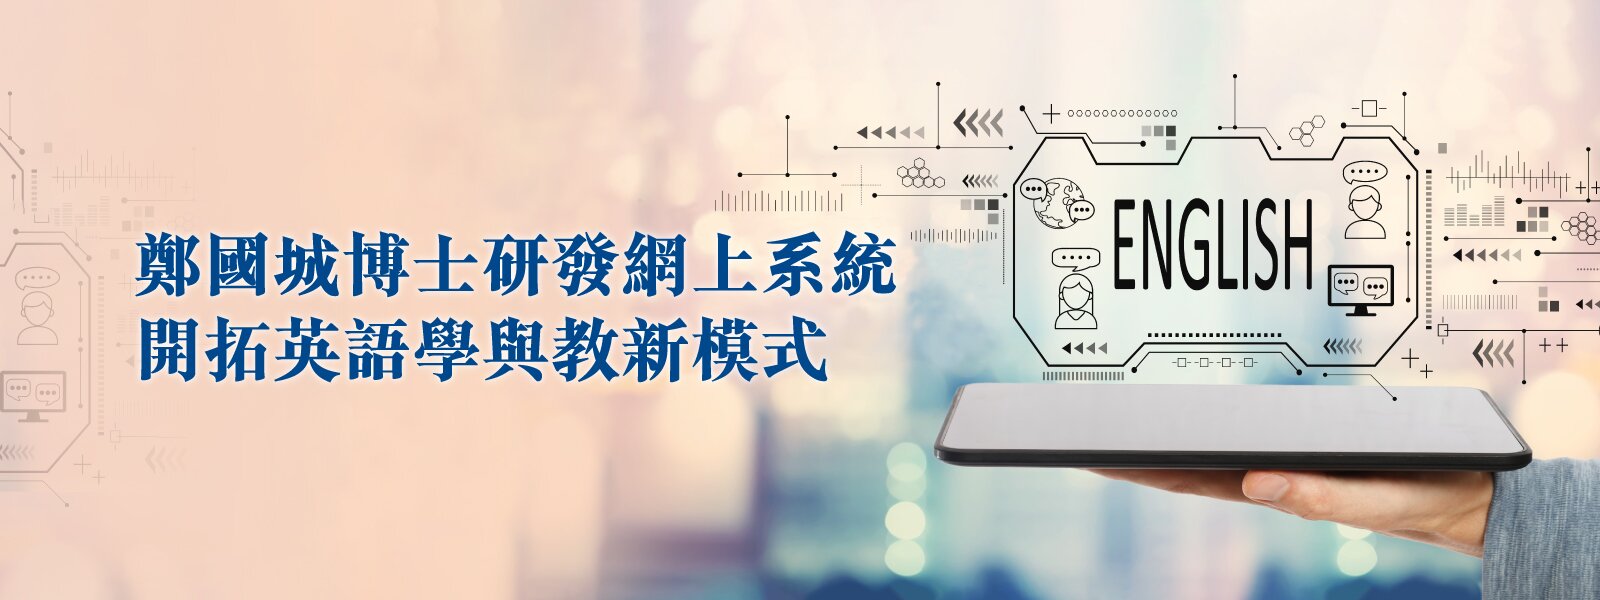 鄭國城博士研發網上系統    開拓英語學與教新模式